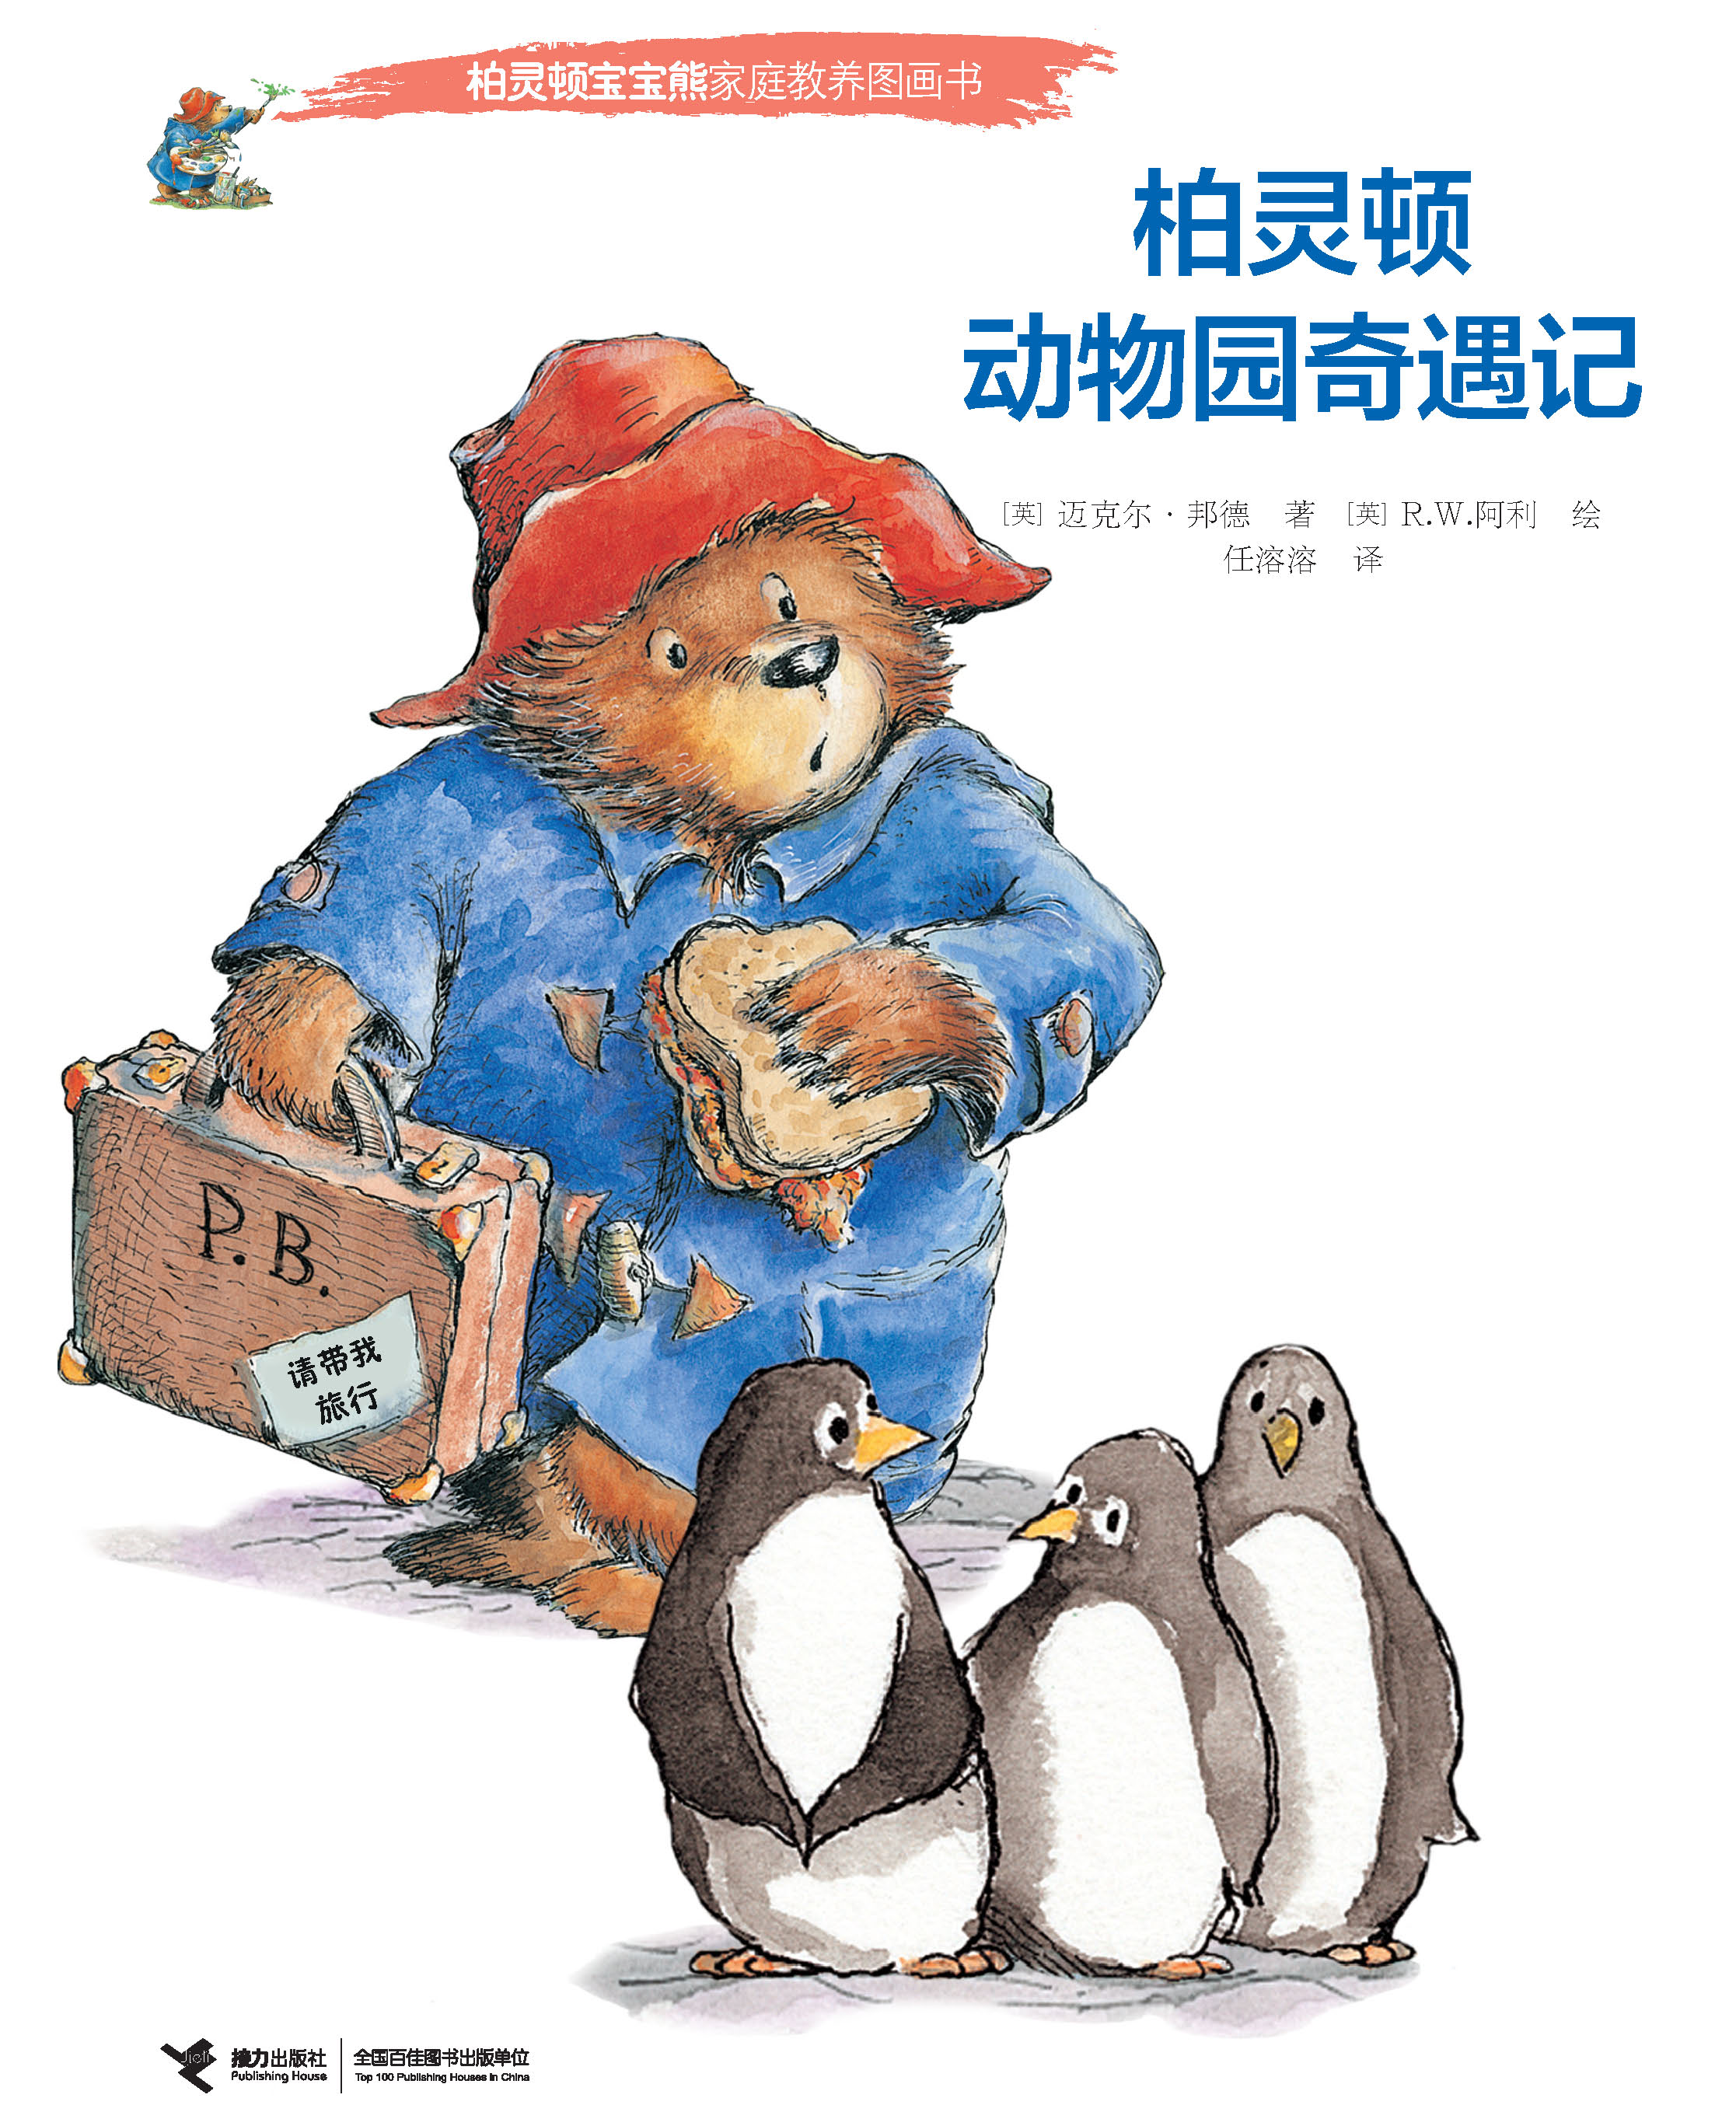 柏灵顿宝宝熊家庭教养图画书:柏灵顿动物园奇遇记